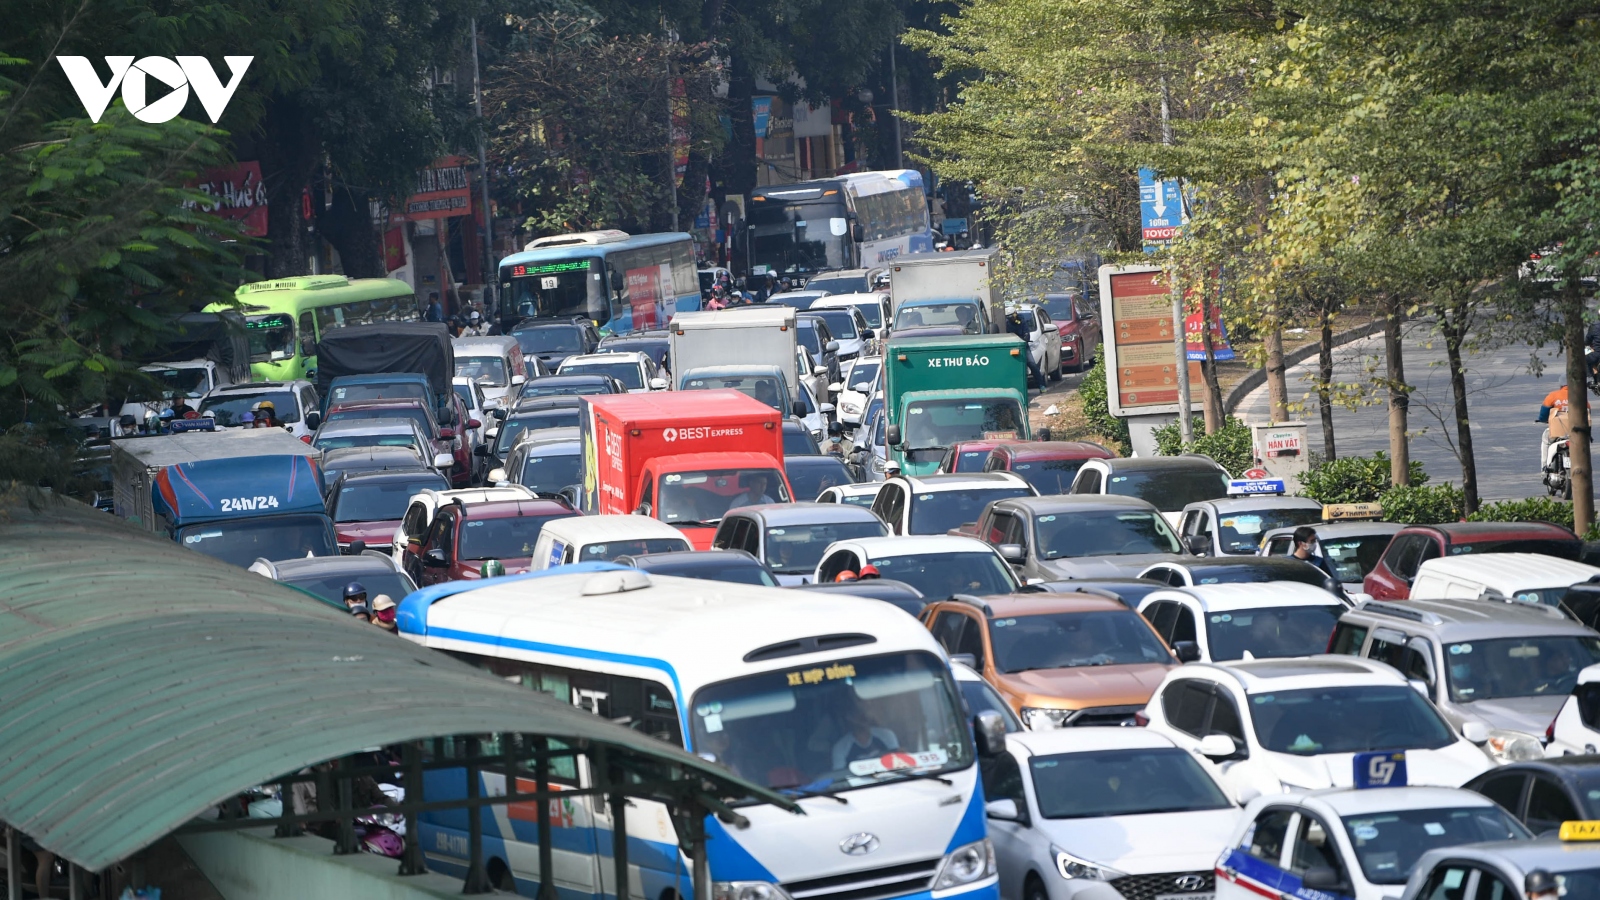 Đường phố Hà Nội "lúc nào cũng tắc" trong những ngày gần Tết Quý Mão 2023